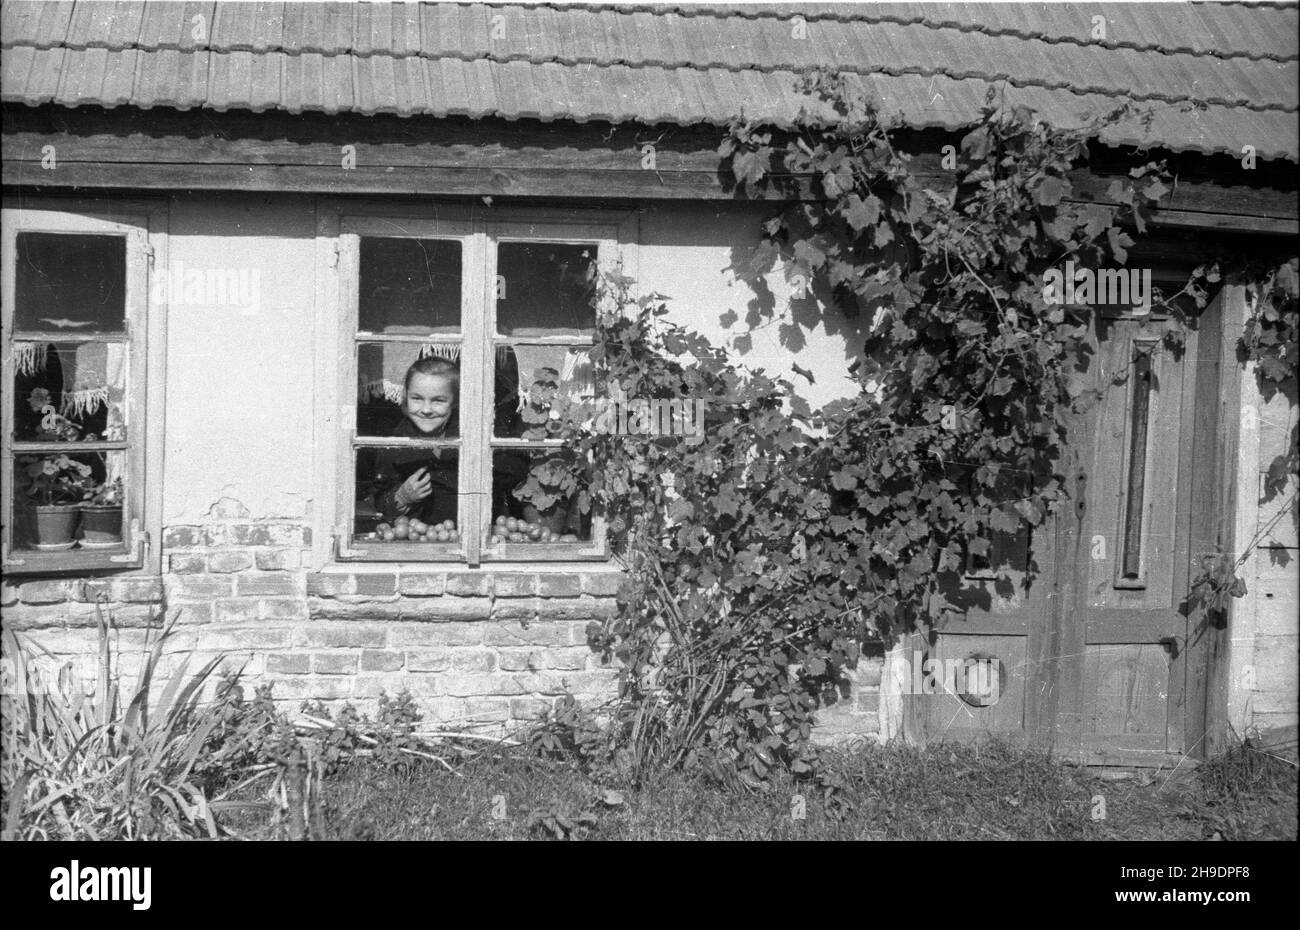 Lisków, 1947-10. Dziewczynka wygl¹da przez okno wiejskiego domu. wb/gr  PAP    Dok³adny dzieñ wydarzenia nieustalony.      Liskow, Oct. 1947. A girl looking through the window of a village house.  wb/gr  PAP Stock Photo